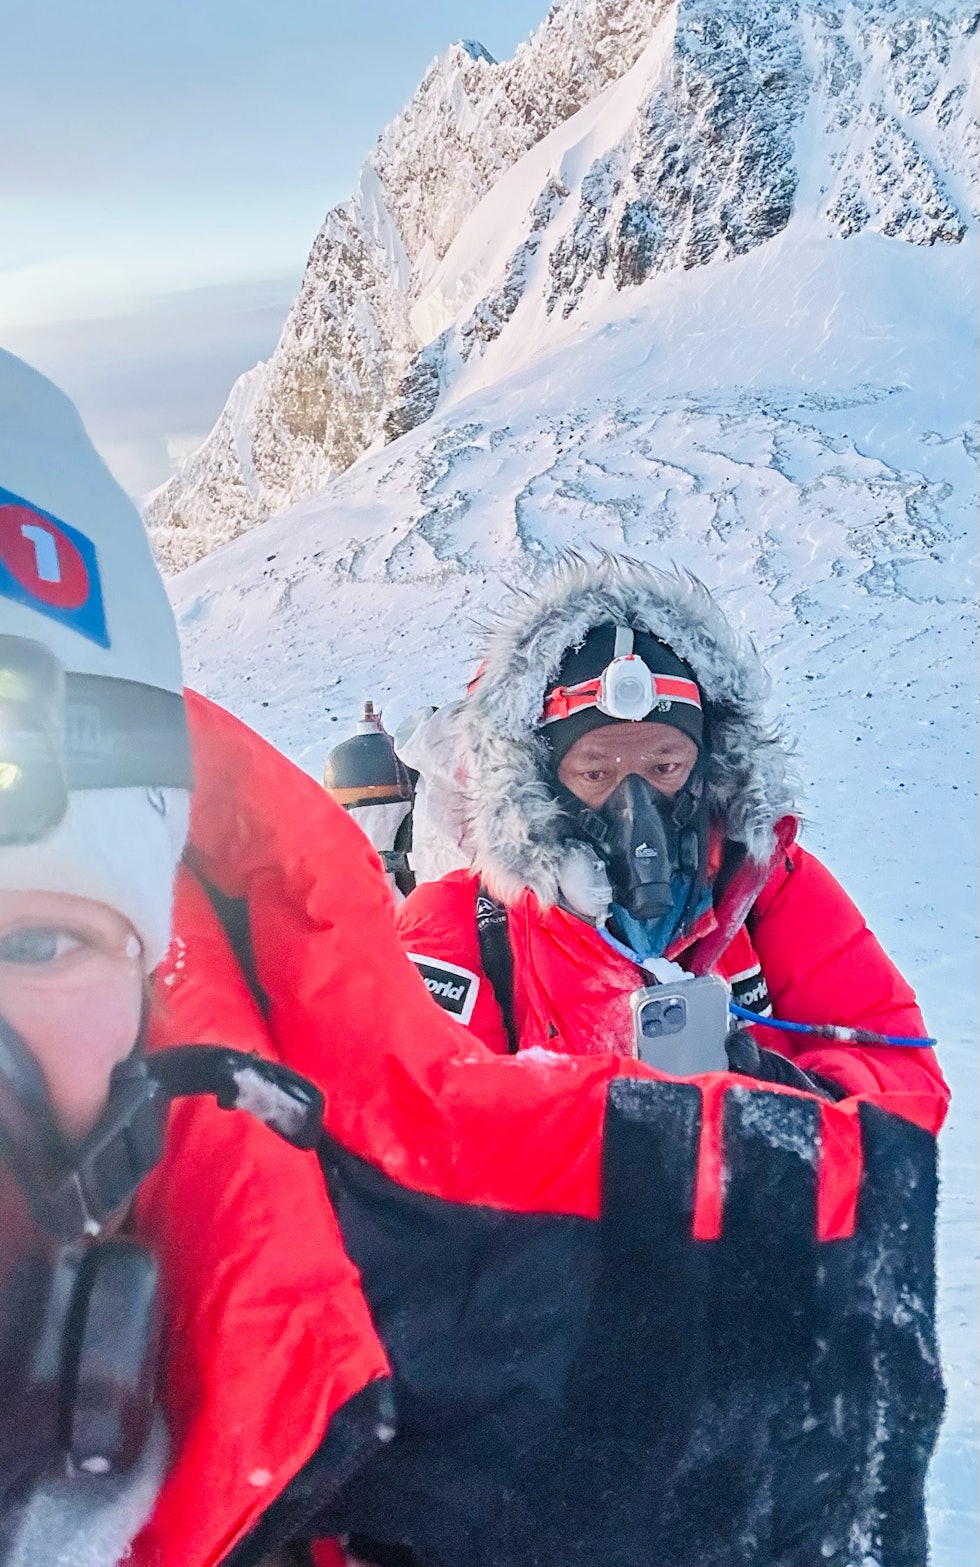 PÅ REKORDJAKT: Kristin Harila og hennes faste sherpa Tenjen (Lama) Sherpa ligger langt foran skjema i jakten på verdensrekorden. Her er de på Mt. Everest i vår. Arkivfoto: Kristin Harila